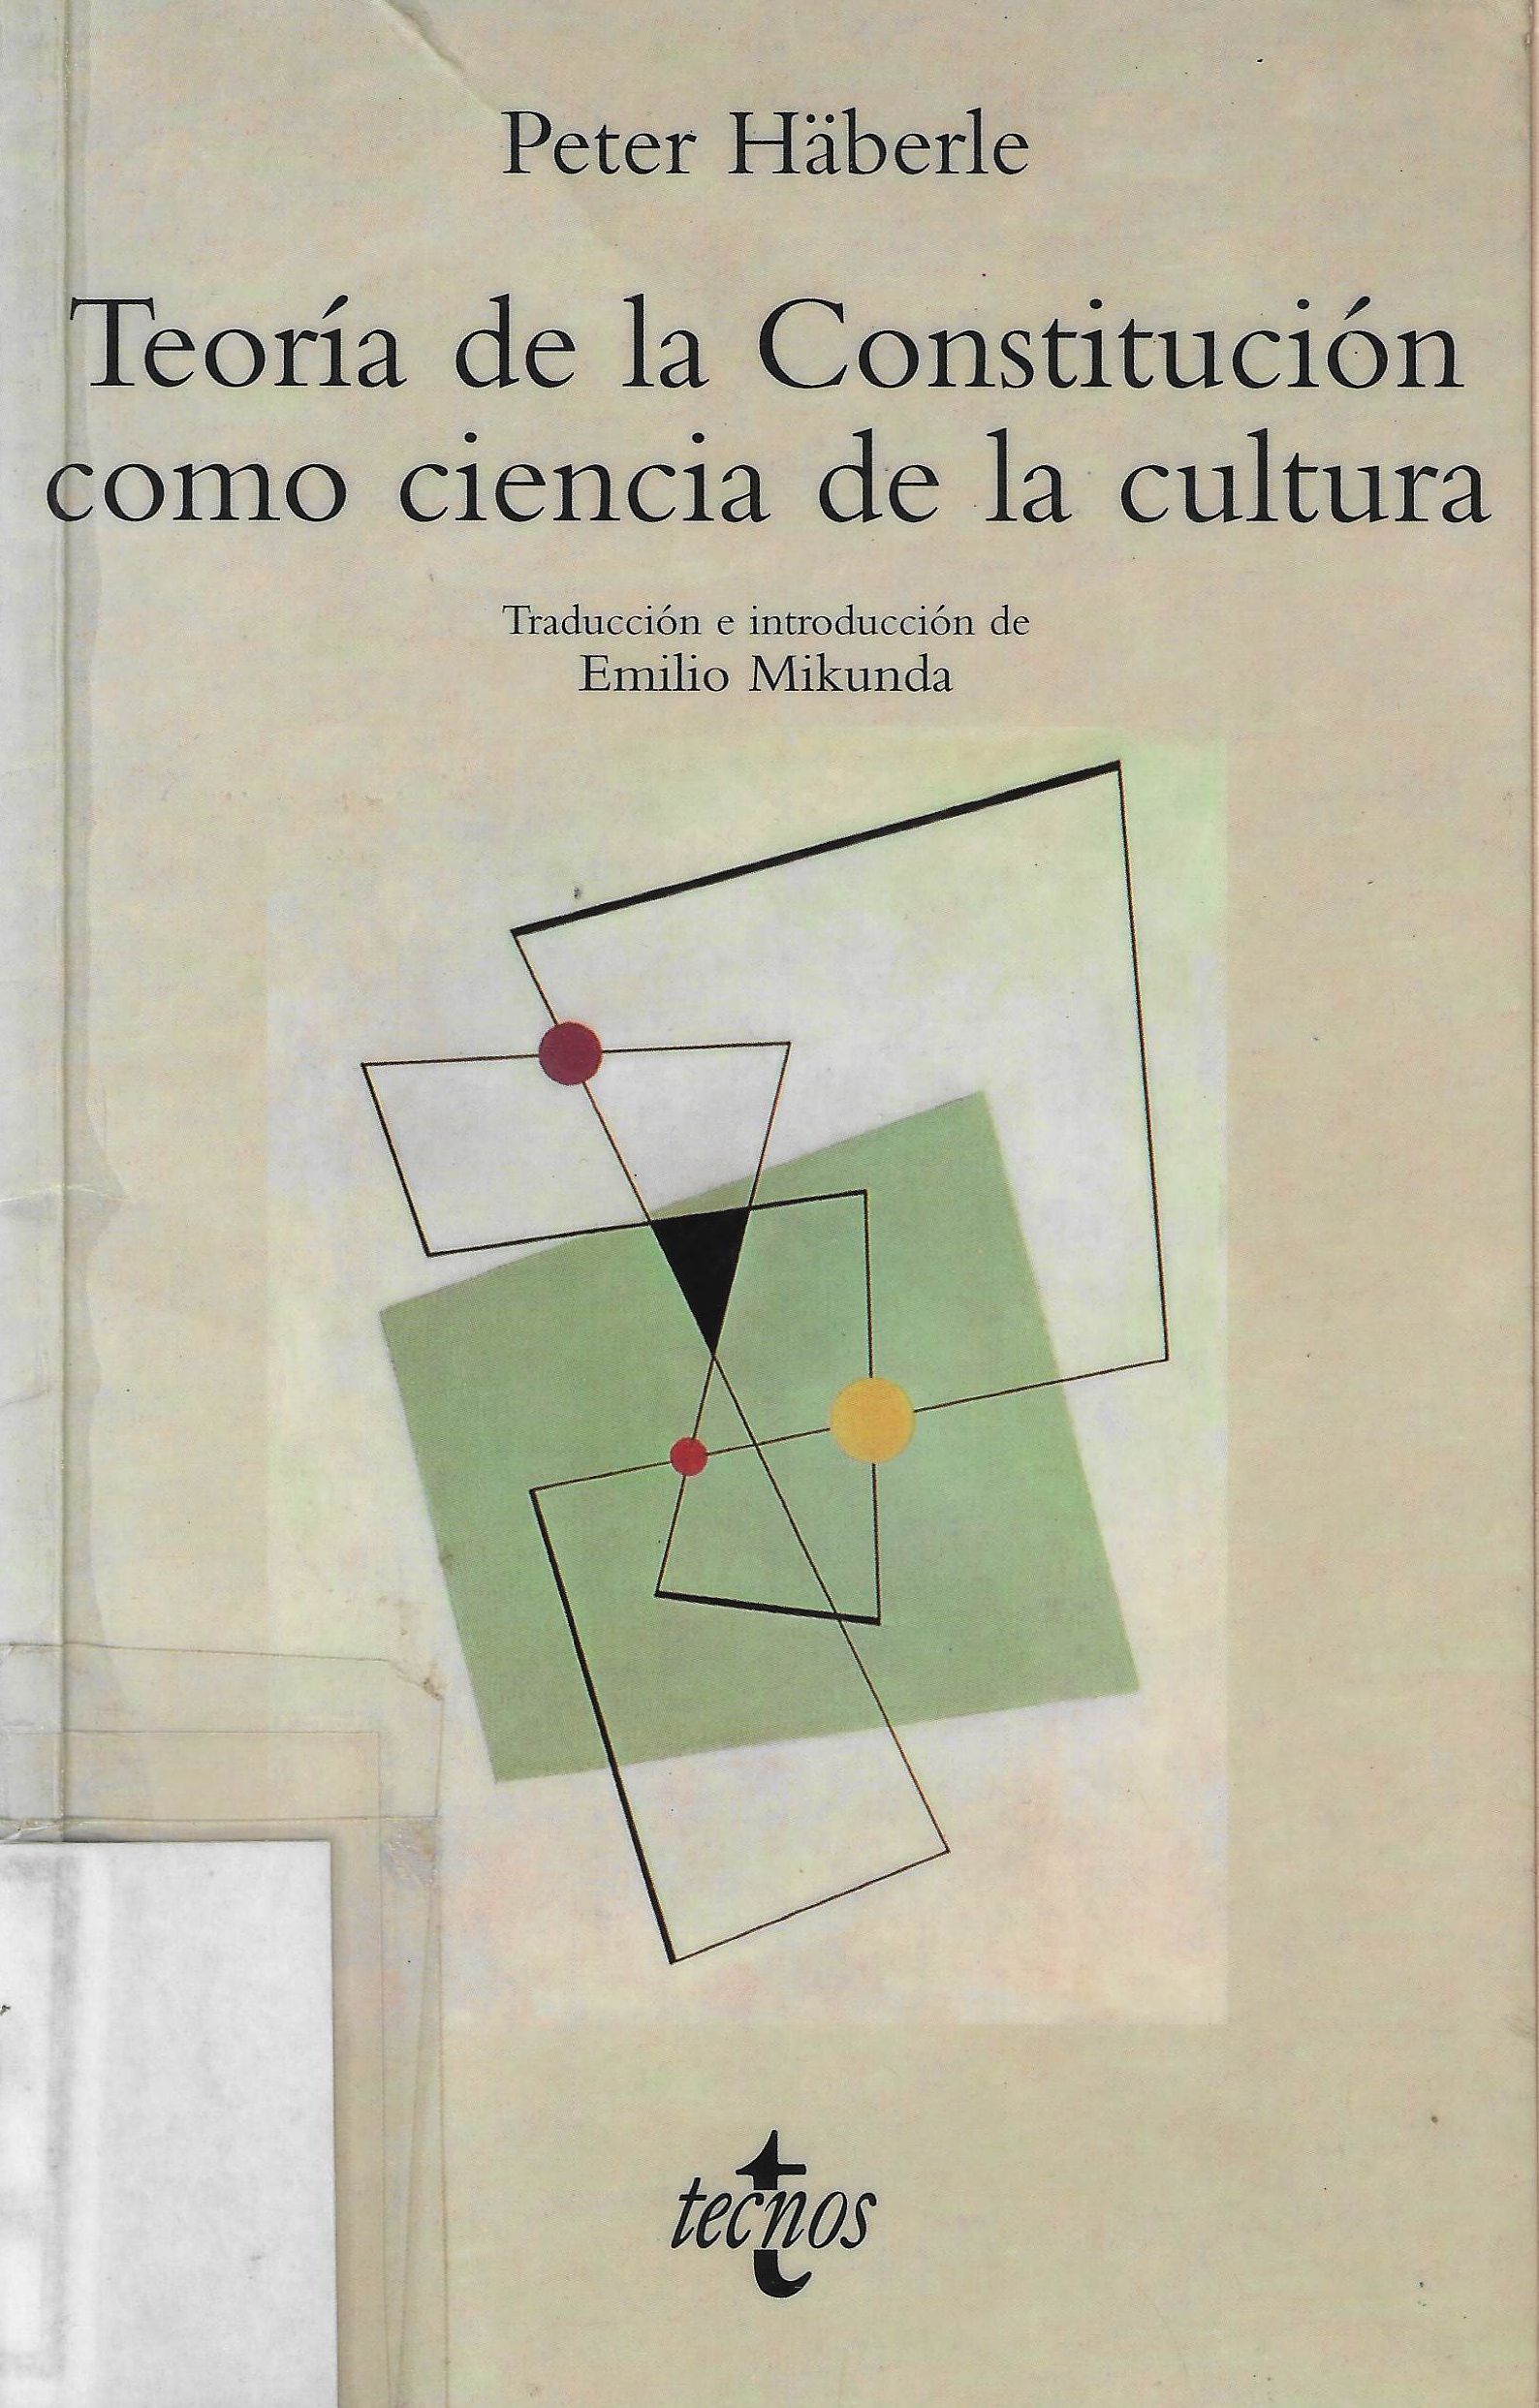 Imagen de portada del libro Teoría de la constitución como ciencia de la cultura